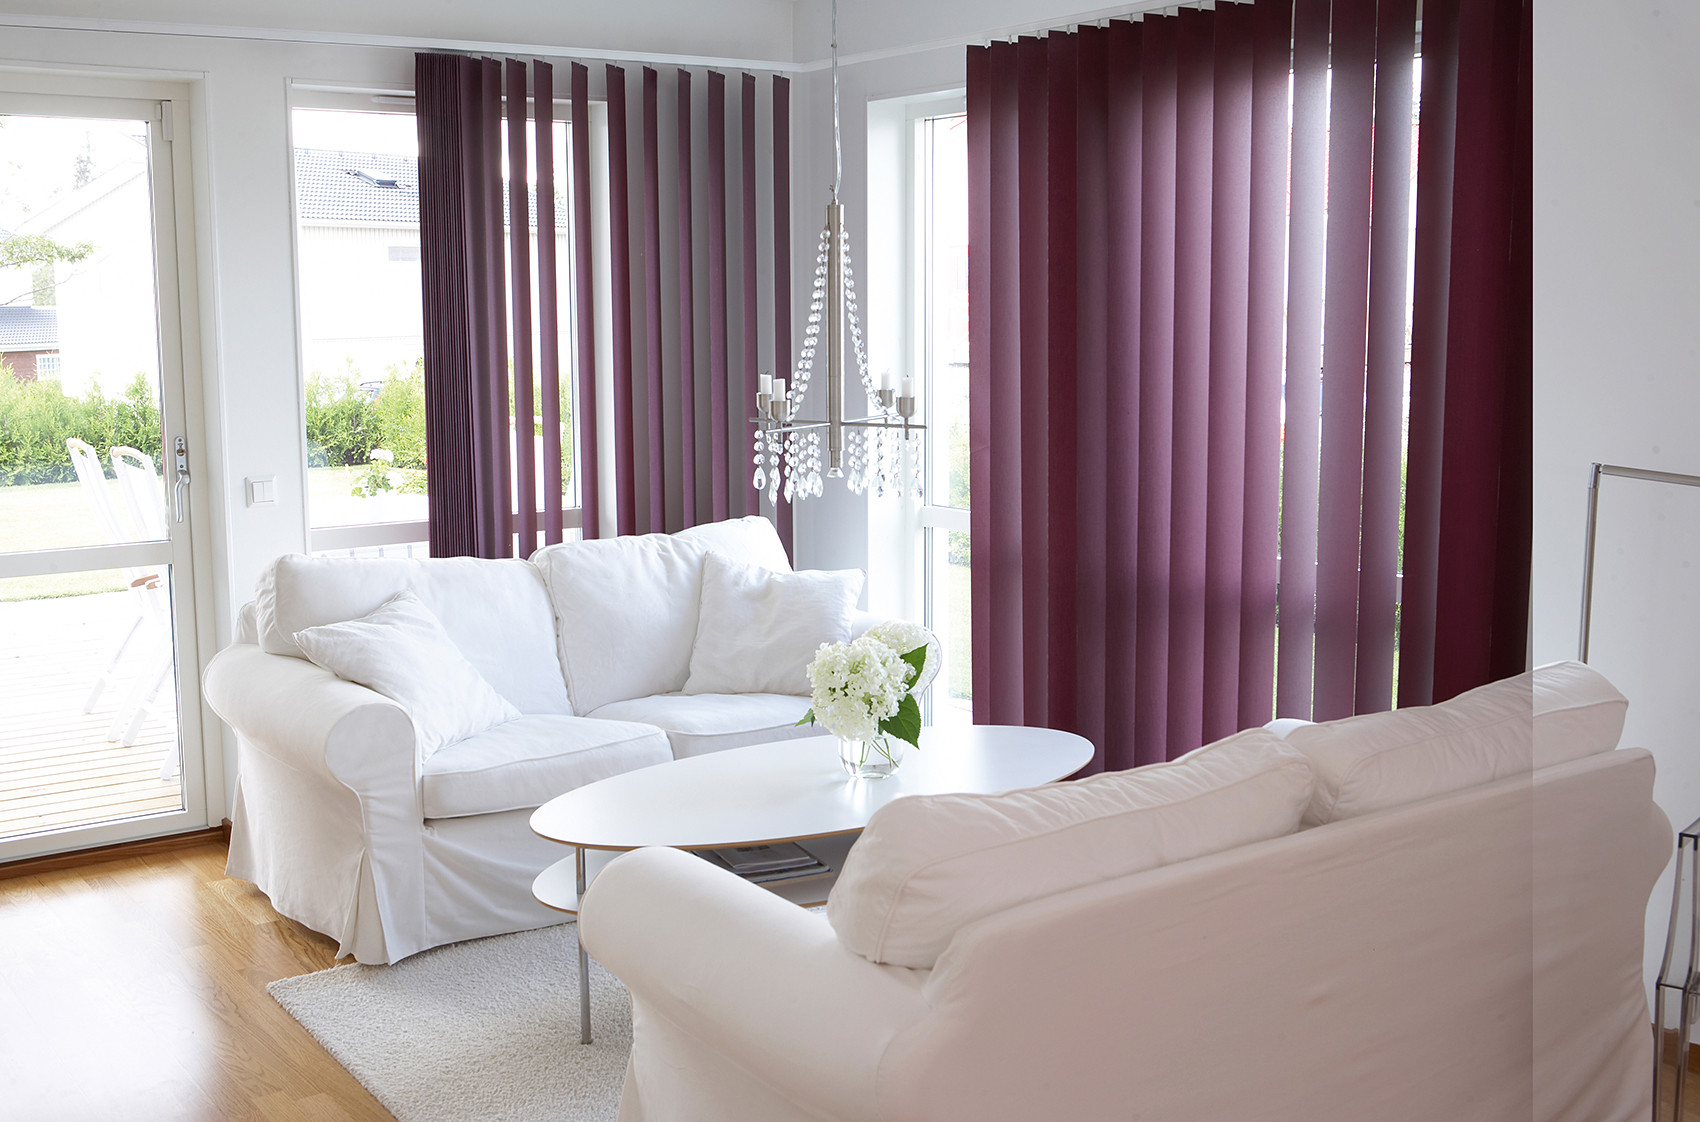 Några av våra gardiner - Modern - Living Room - Stockholm - by Markis.nu |  Houzz